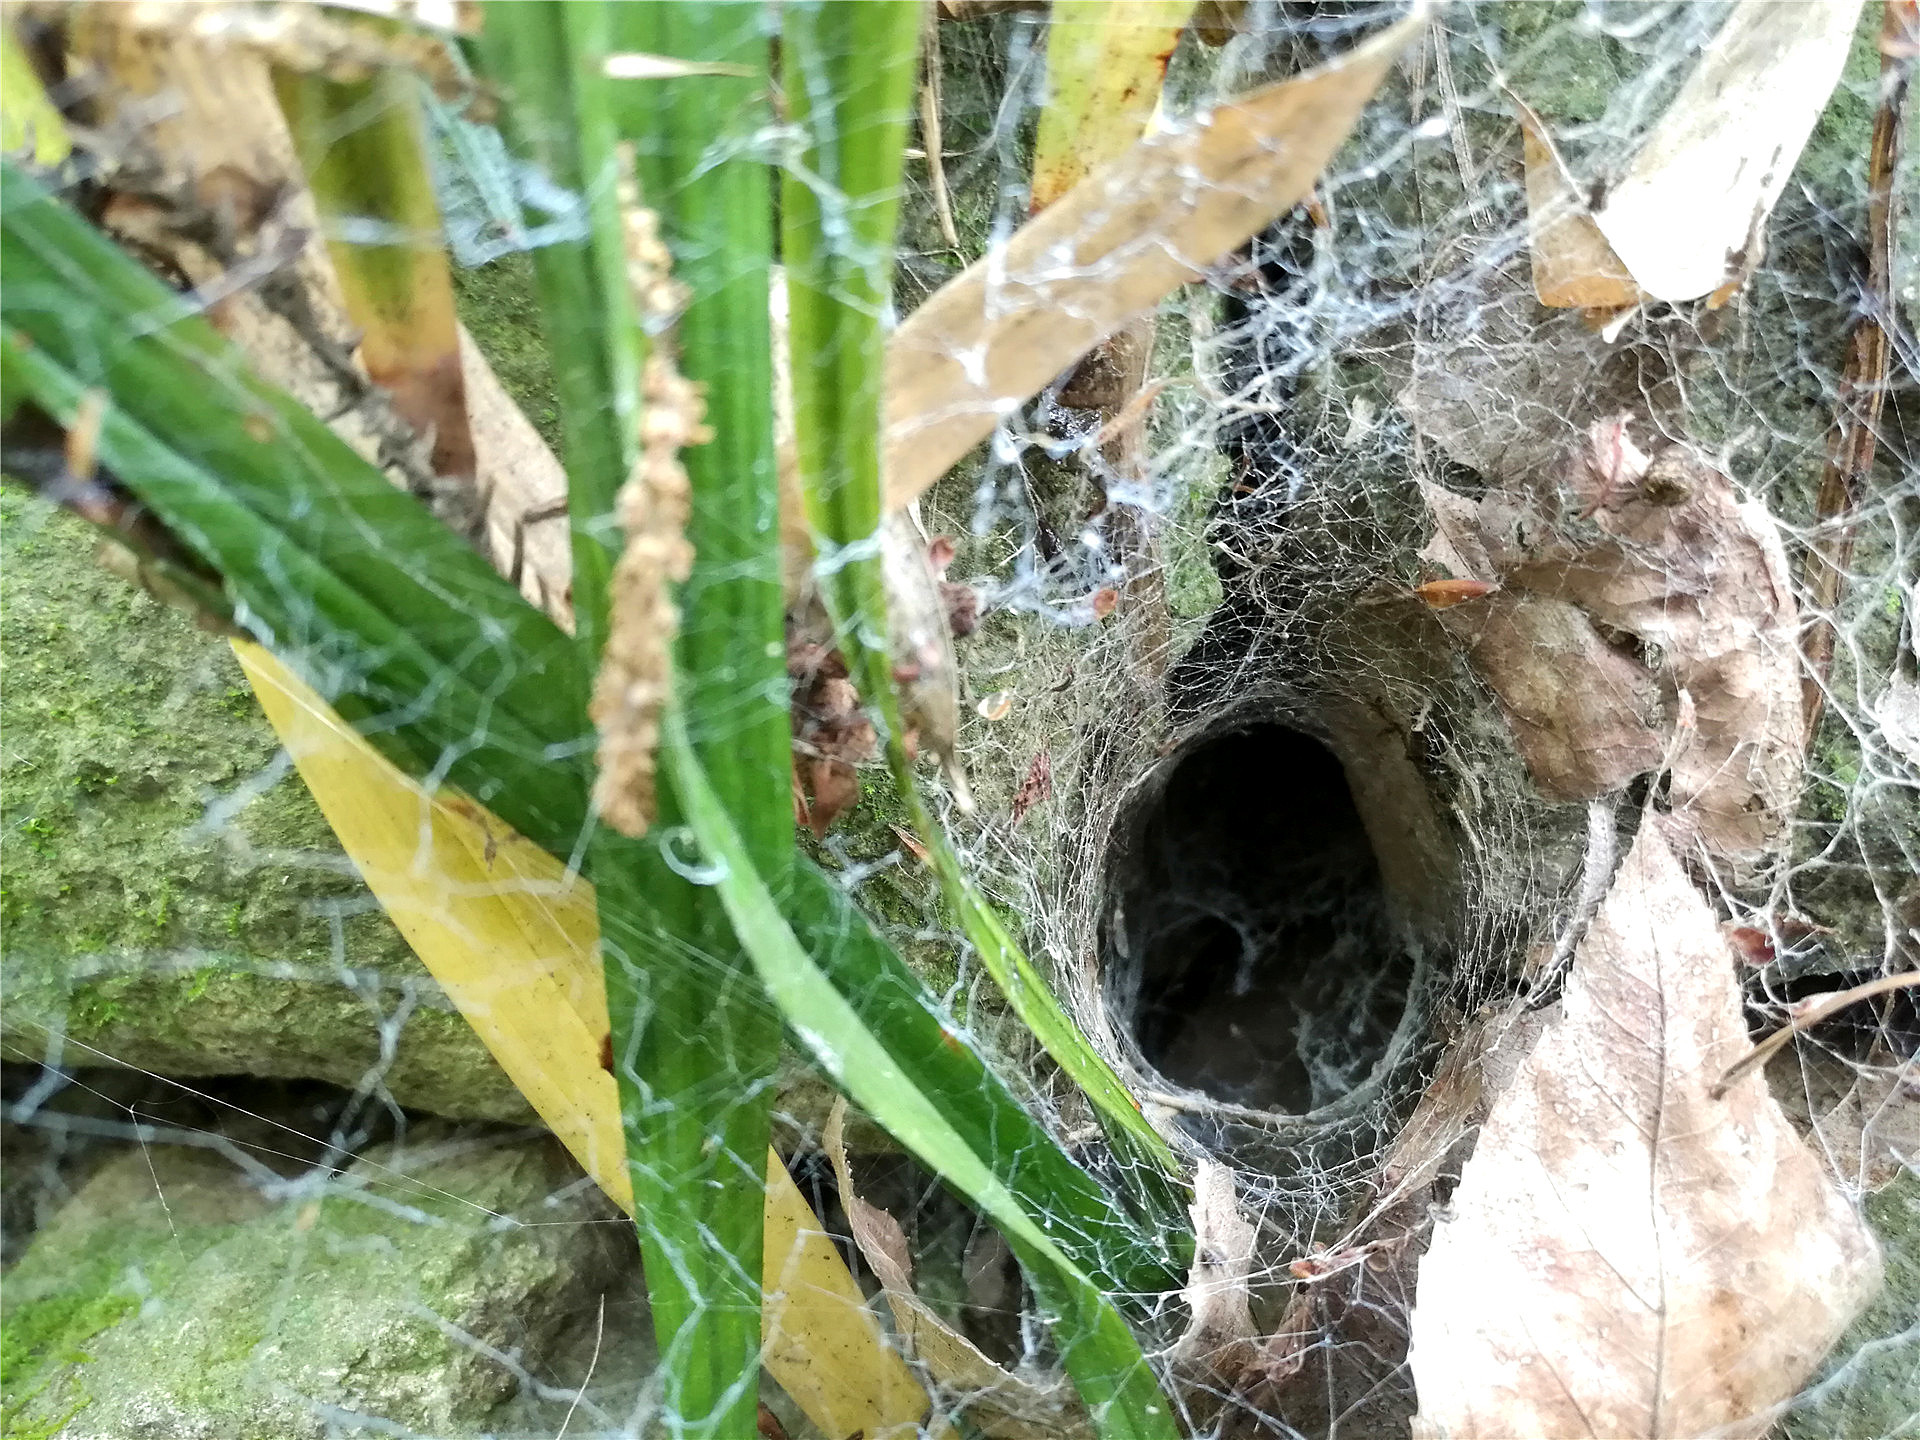 躲在洞穴里的蜘蛛从来没有见过